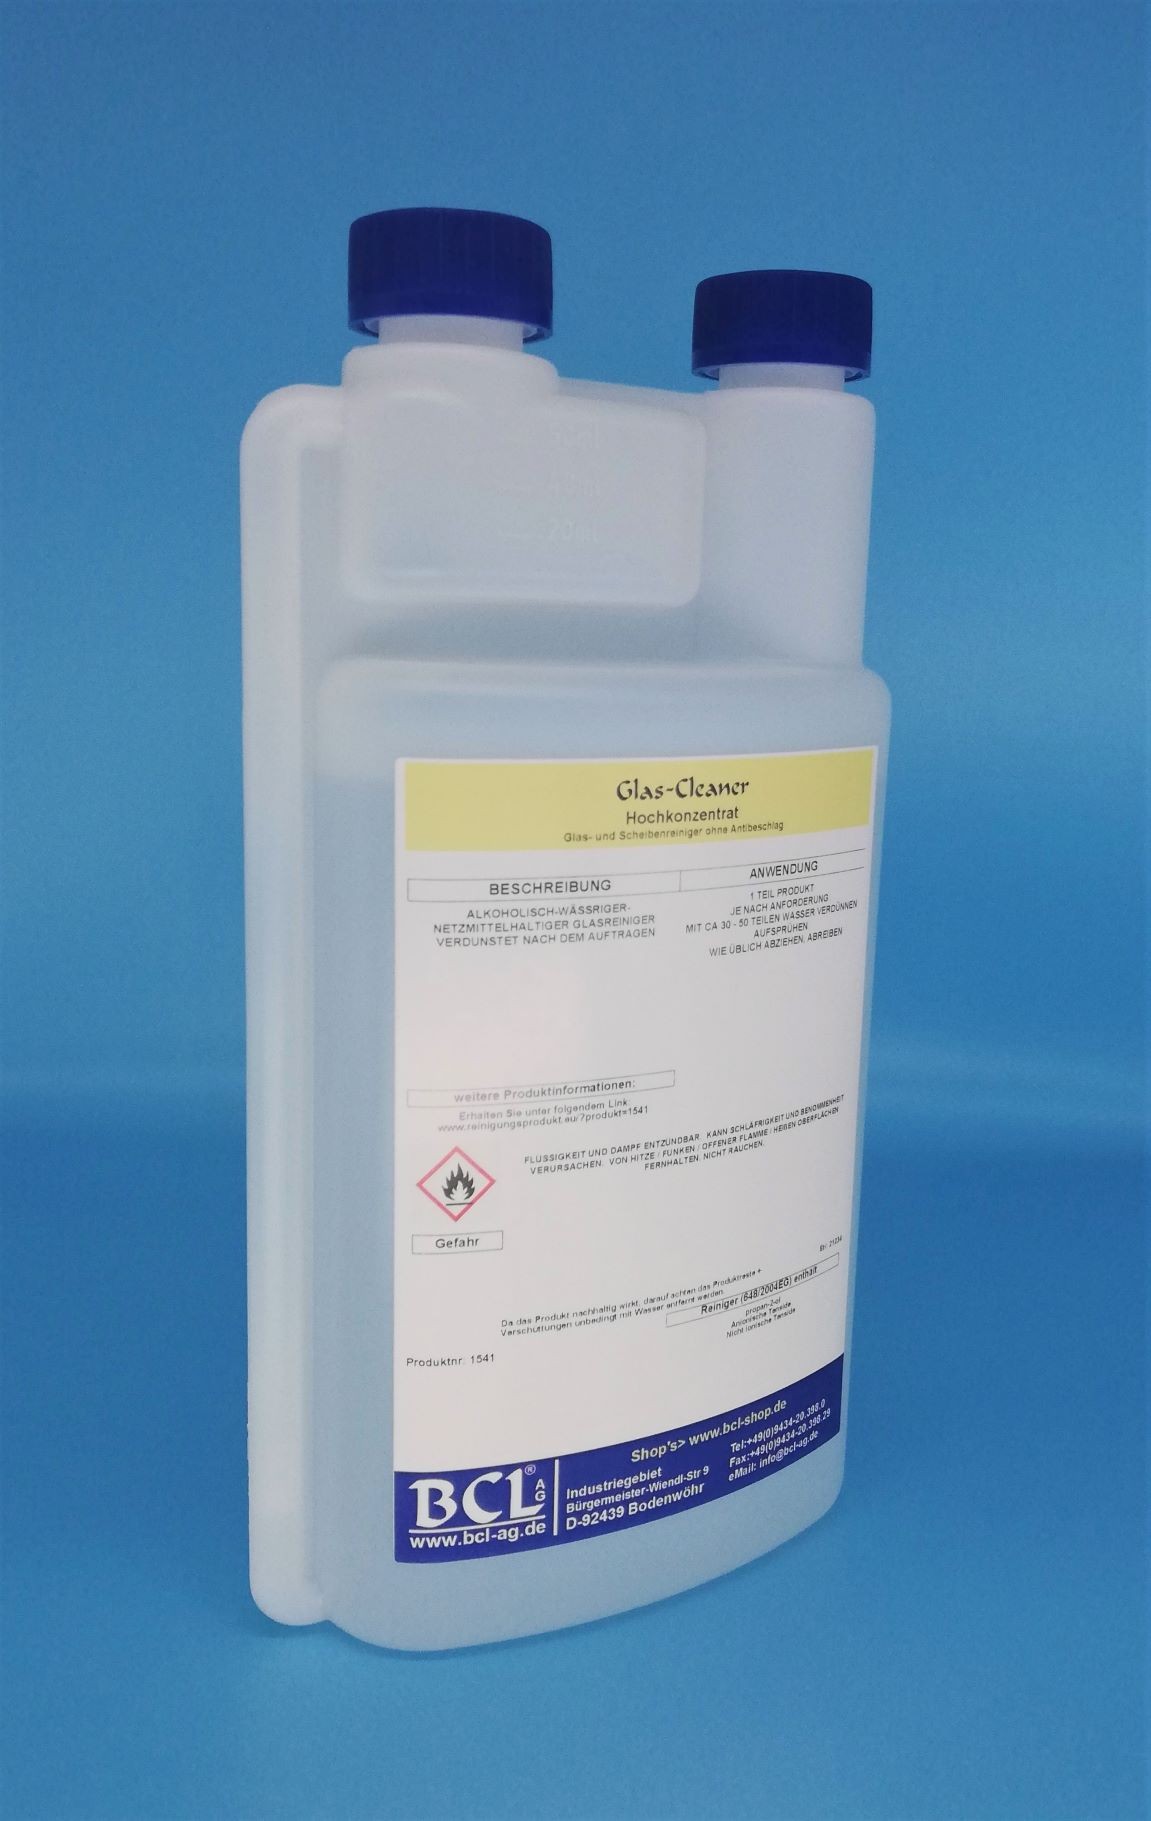 Glas-Cleaner -1 Kg -Dosierflasche